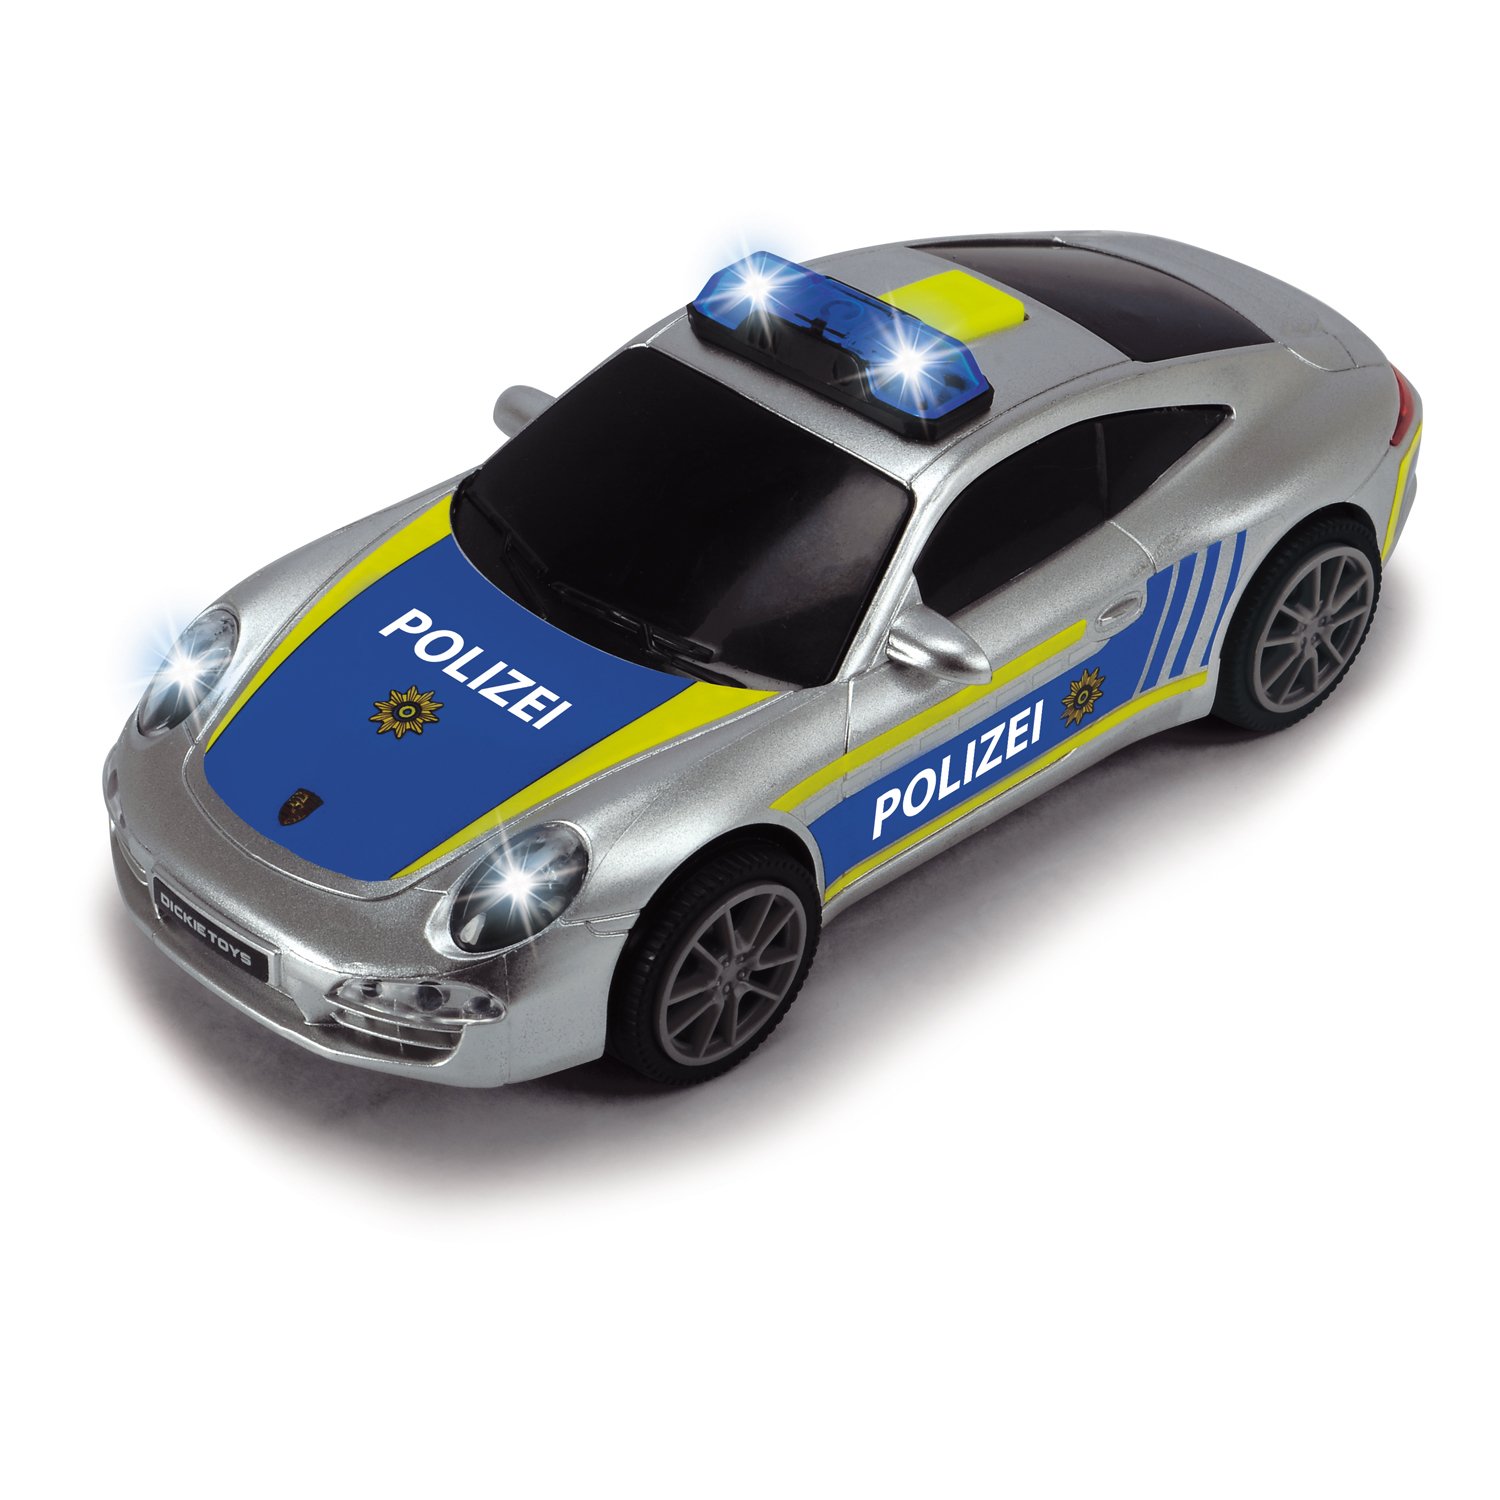 Полицейская станция с 2 машинками Porsche и Citroën, свет, звук, свободный ход  